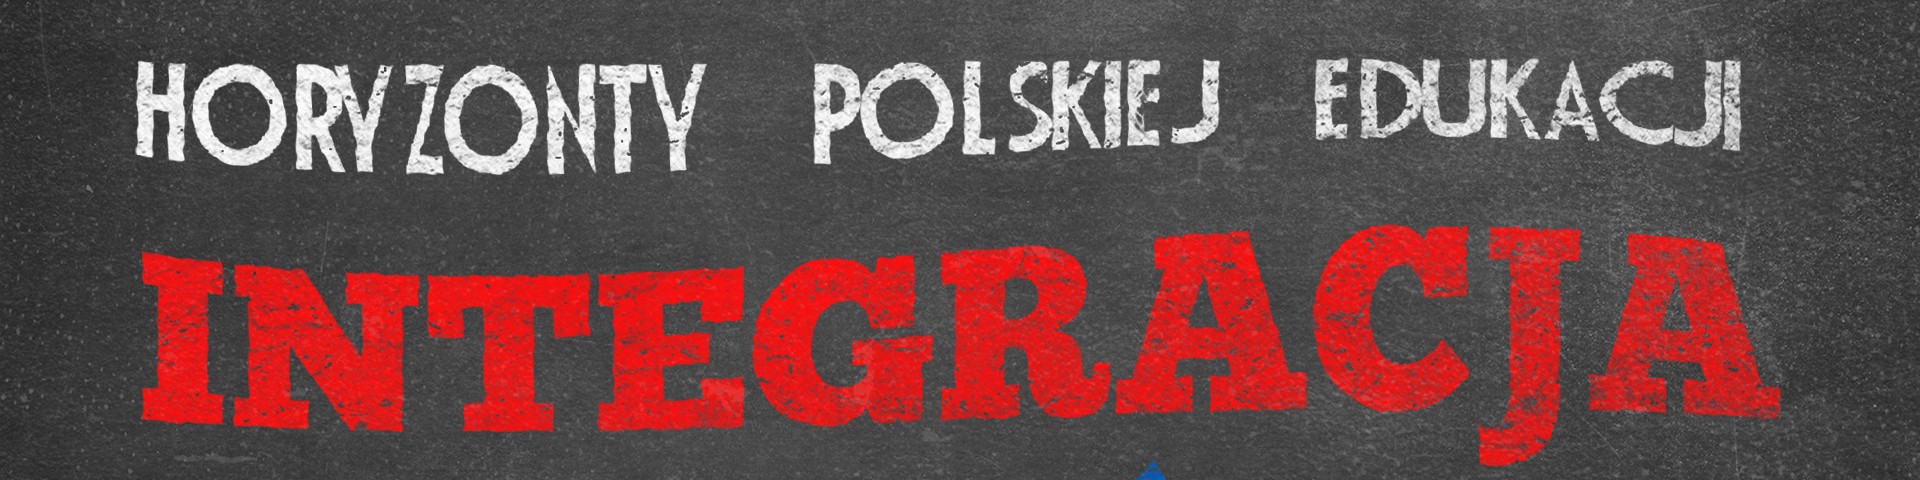 Horyzonty polskiej edukacji – integracja